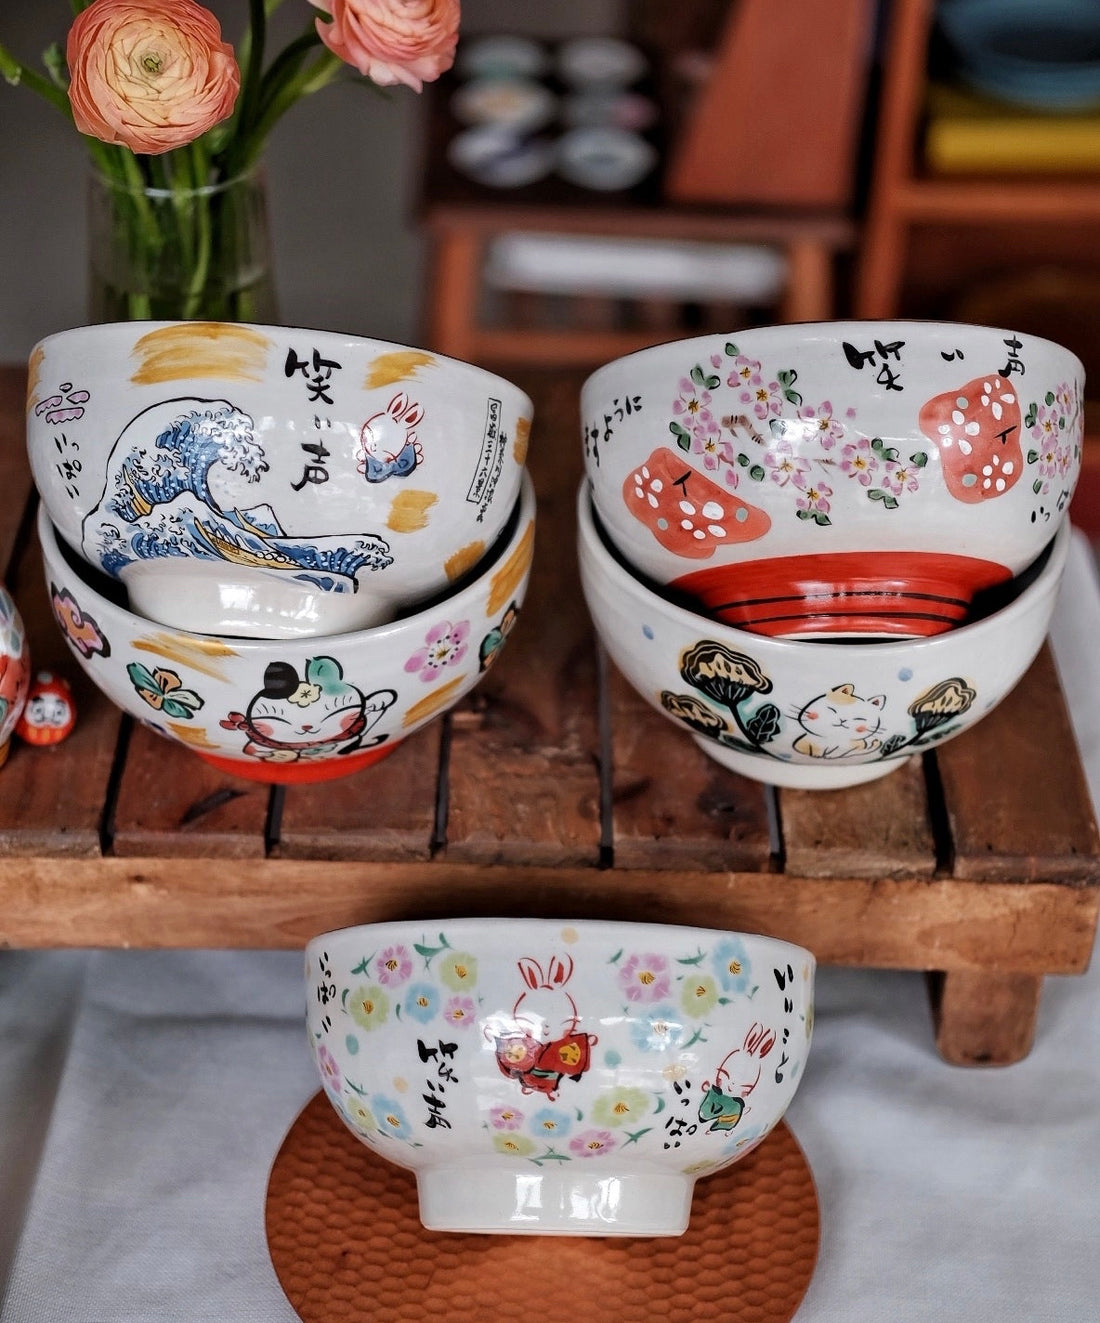 Yudachigama Hand-painted Large Donburi Bowl